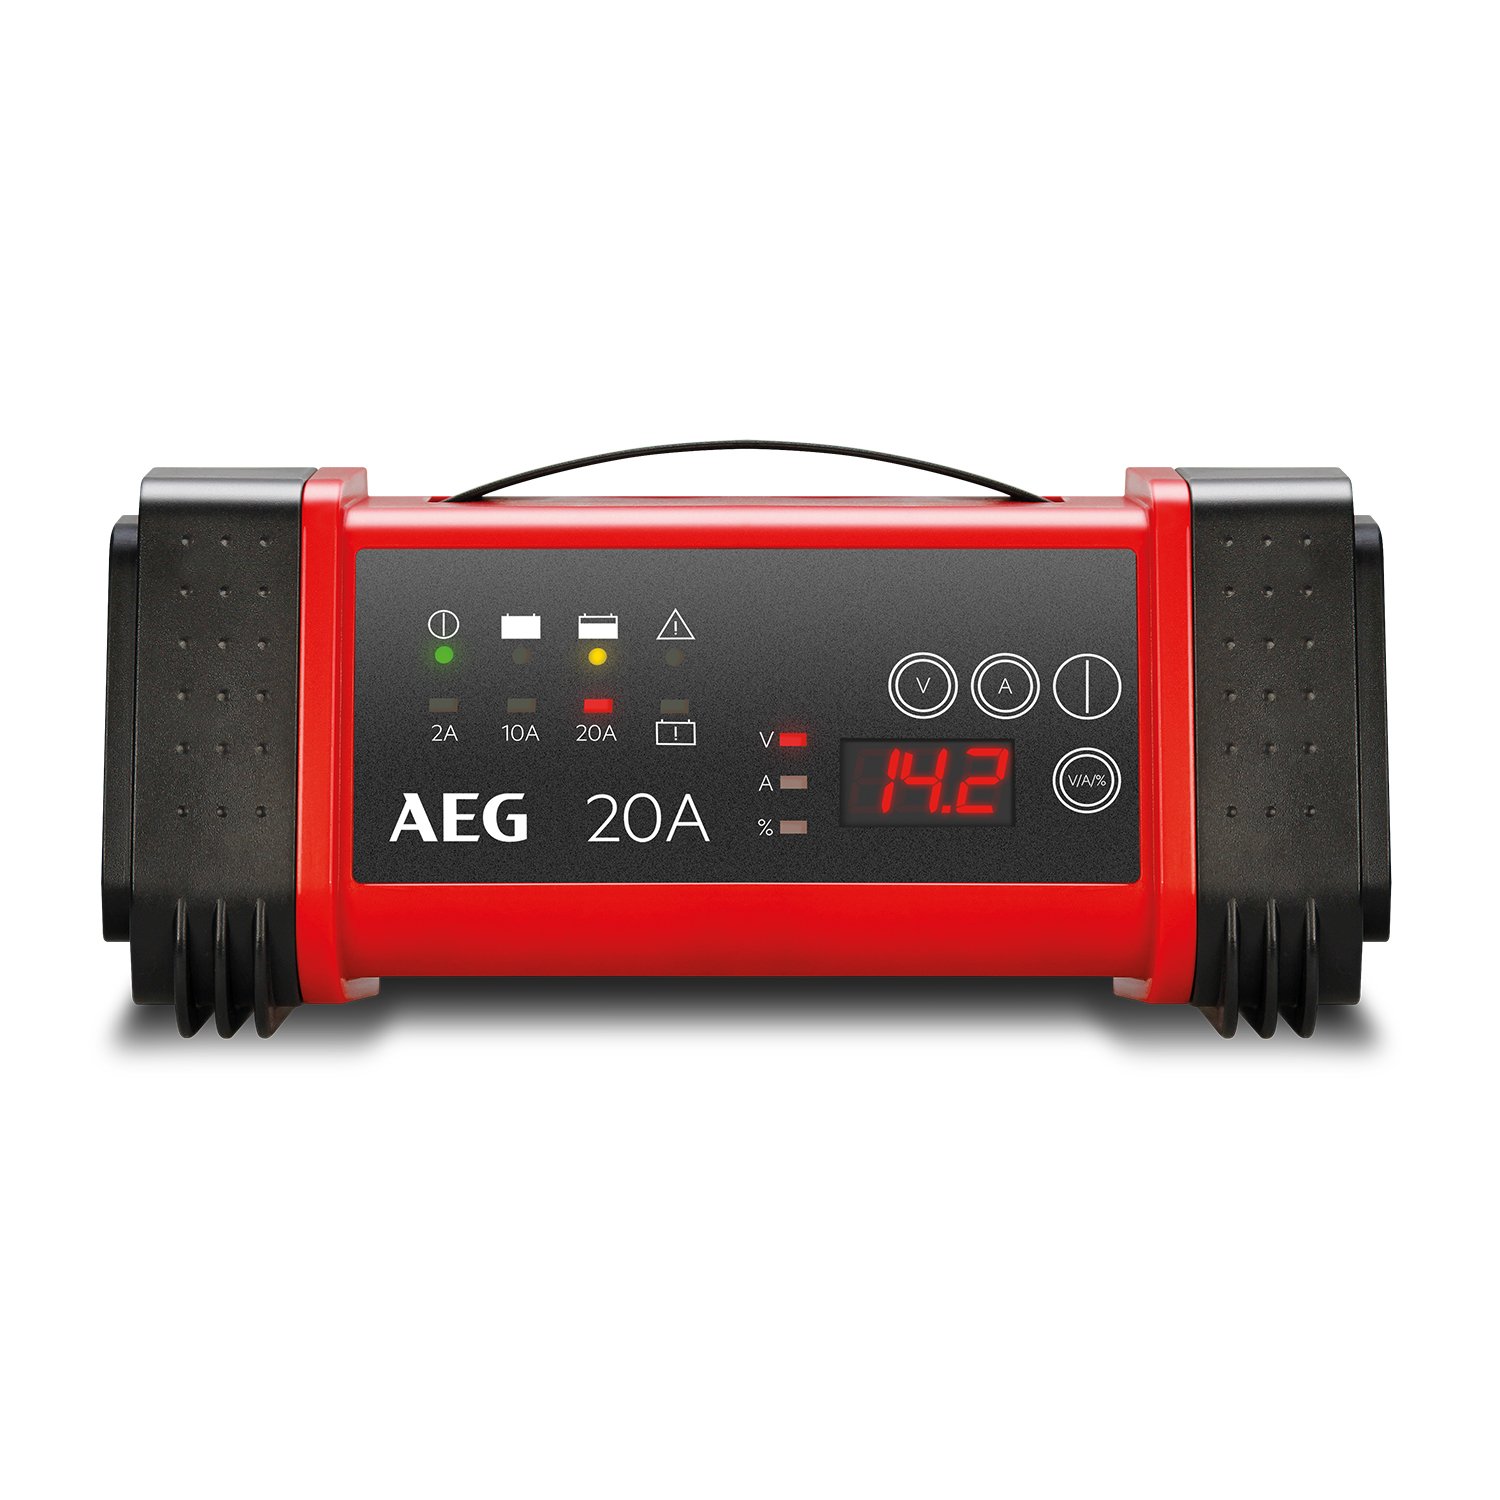 AEG 97025 Mikroprozessor Batterie Ladegerät LT 20 Ampere für 12 / 24 V, 9-stufig, Power-Supply, automatischer Temperaturausgleich, Schwarz/Rot von AEG